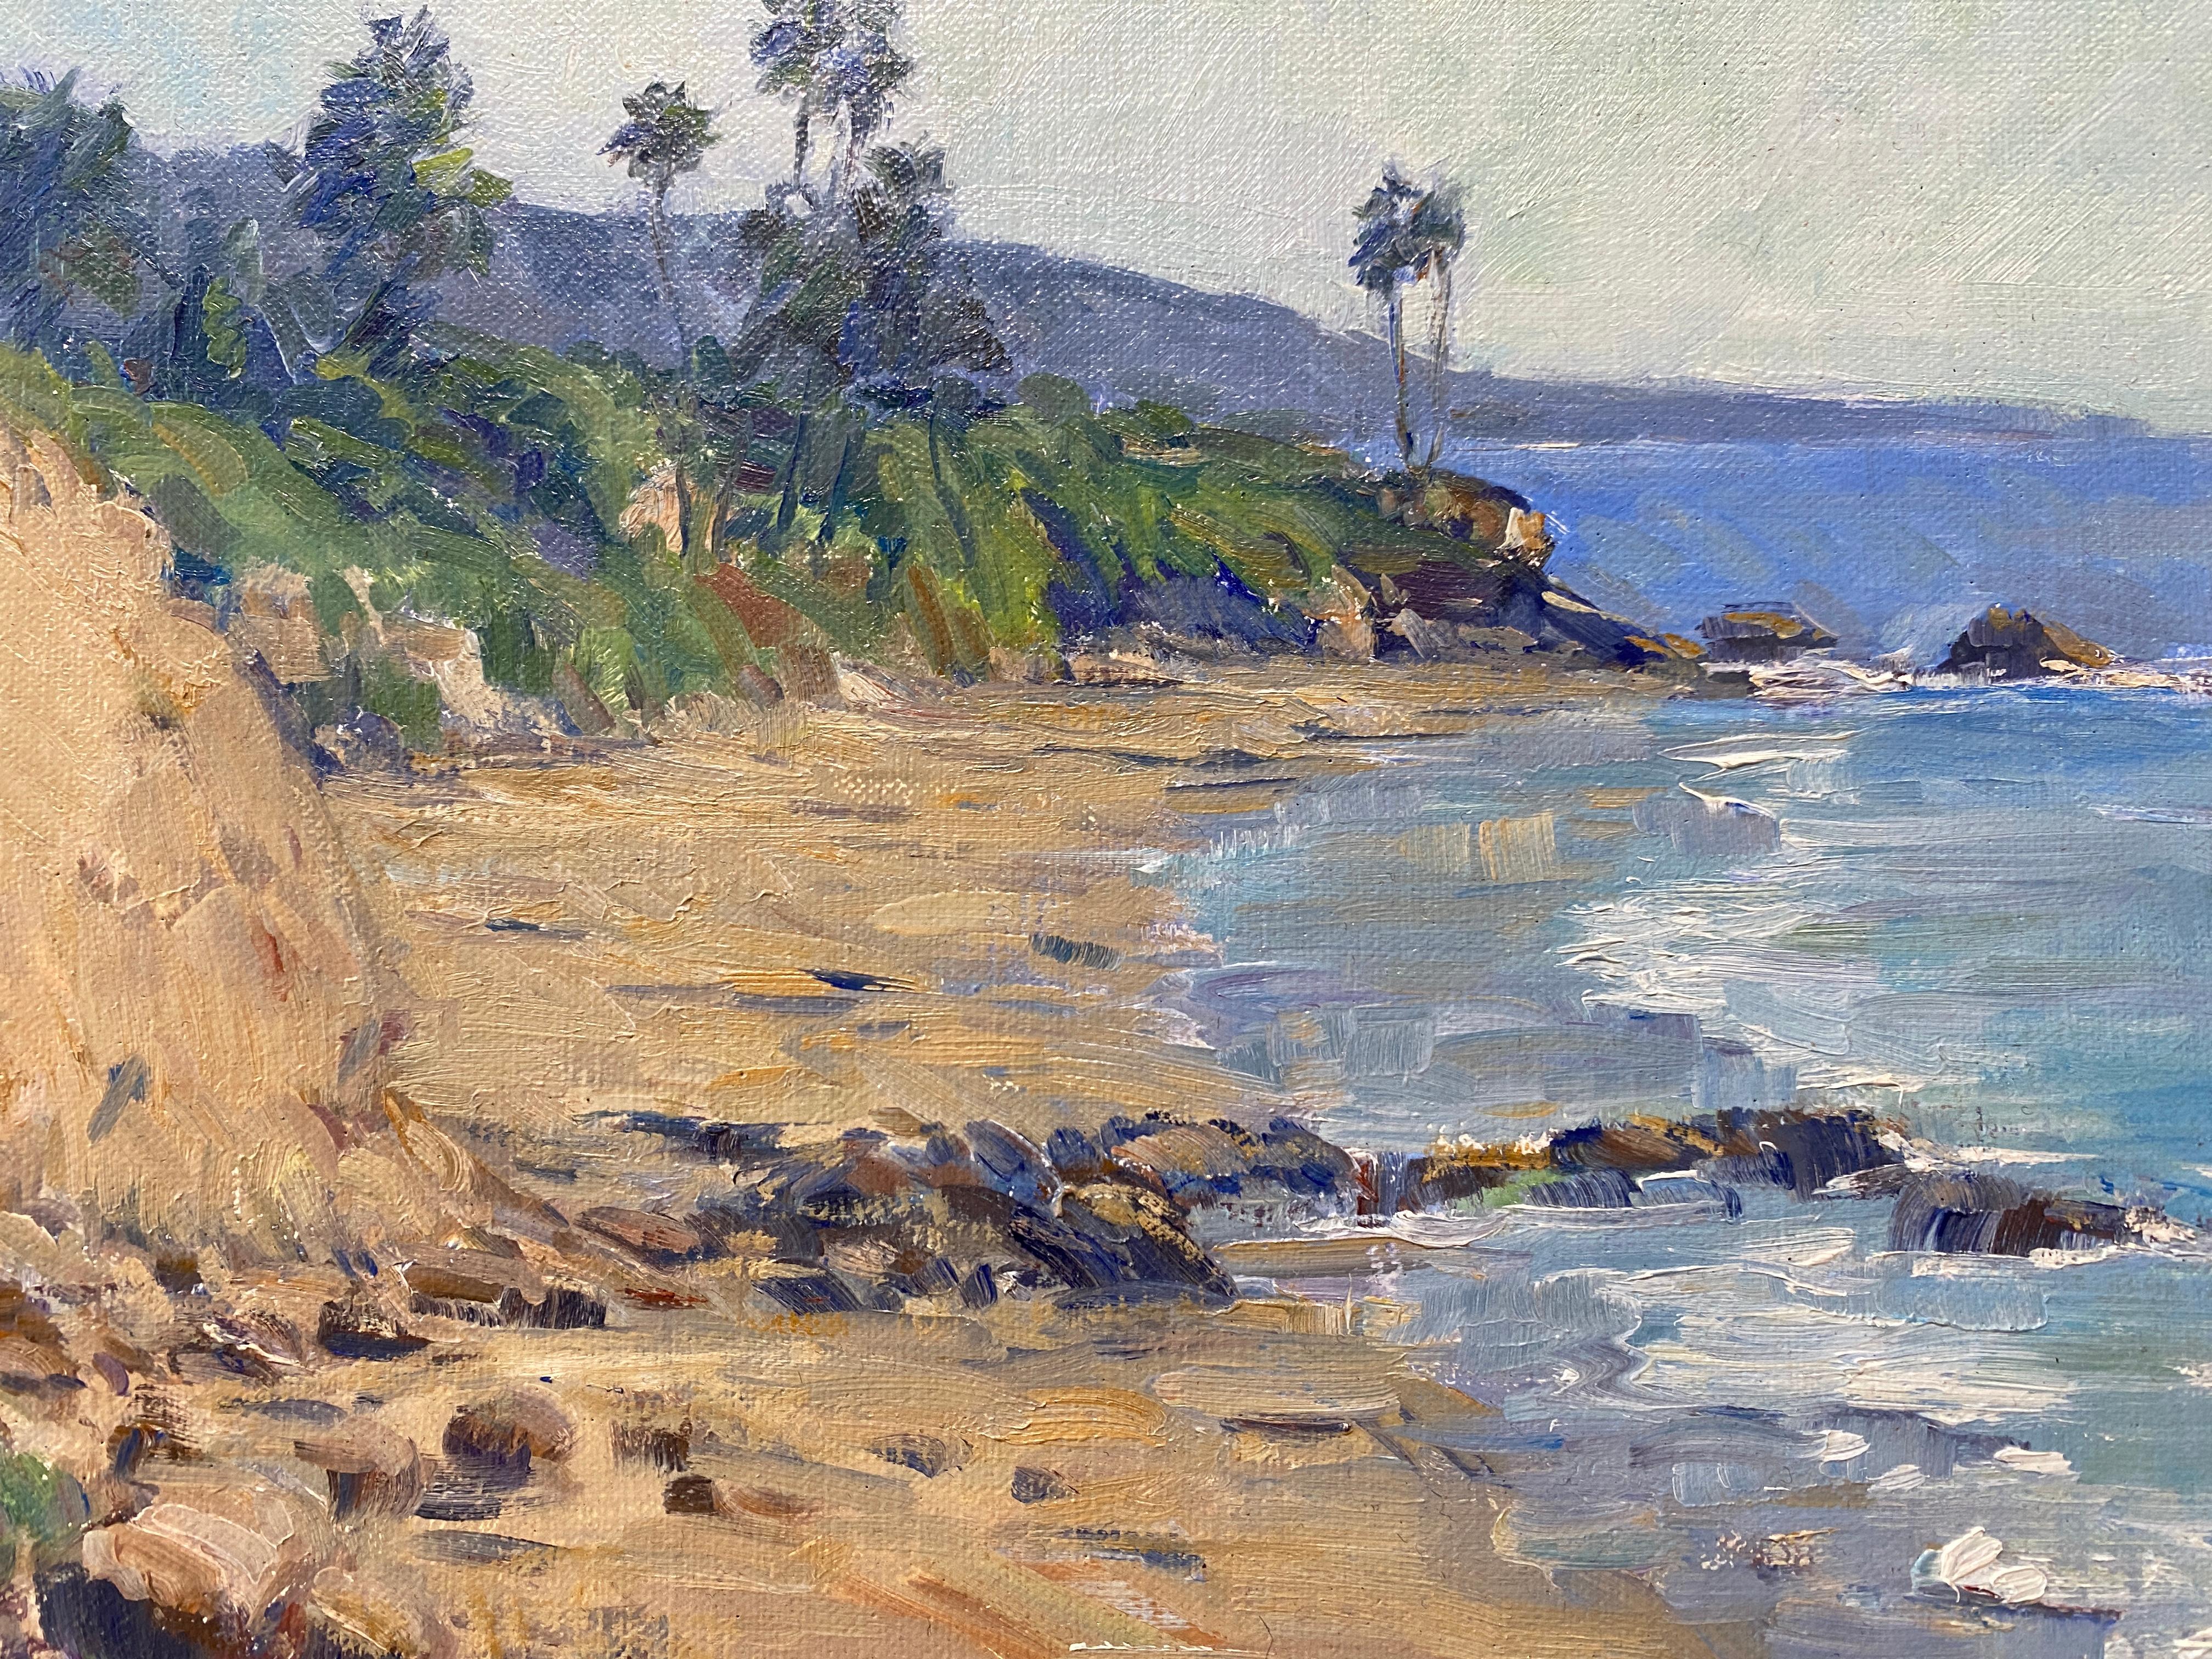 Une peinture à l'huile représentant les falaises du parc Heisler, à Laguna Beach, en Californie. Peint à partir d'une observation directe, sur place. De grands palmiers maigres s'élèvent partout. Les coups de pinceau épais créent de la profondeur